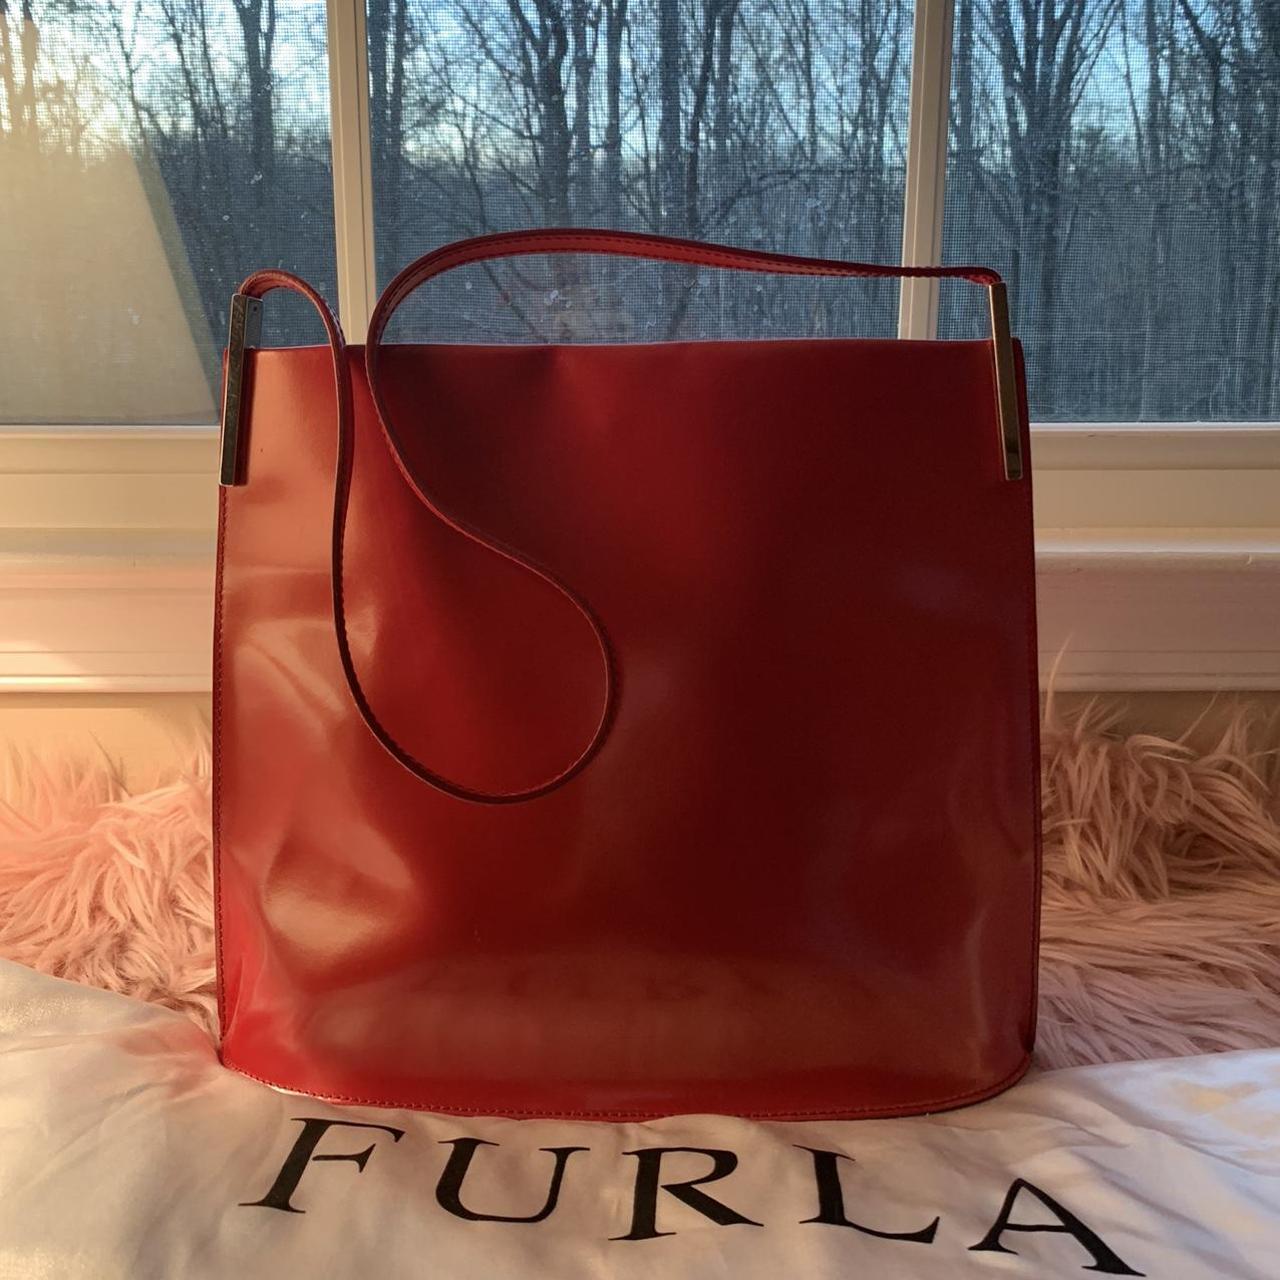 Furla, Bags, Used Furla Tote Bag